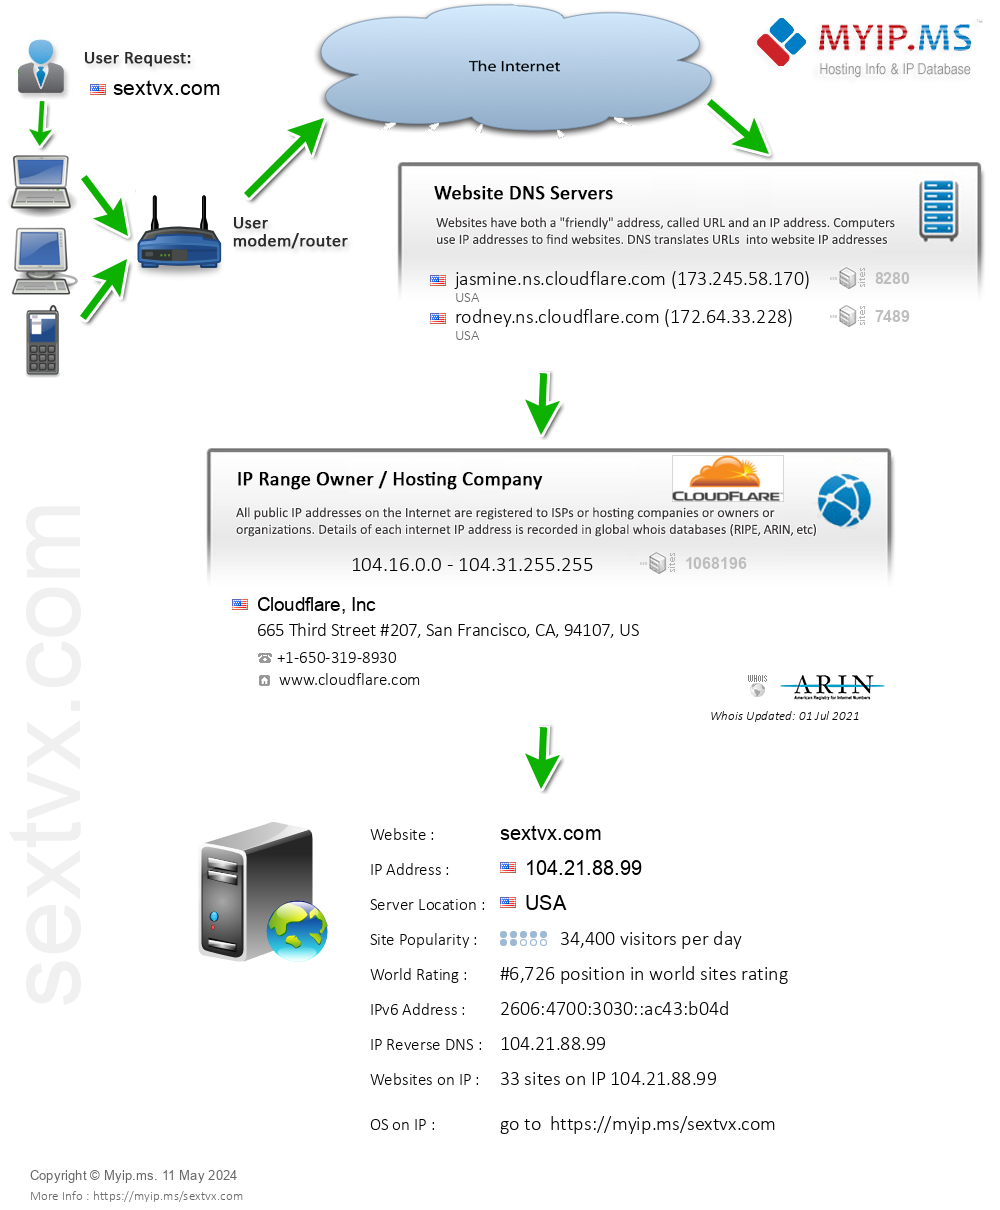 Sextvx.com - Website Hosting Visual IP Diagram